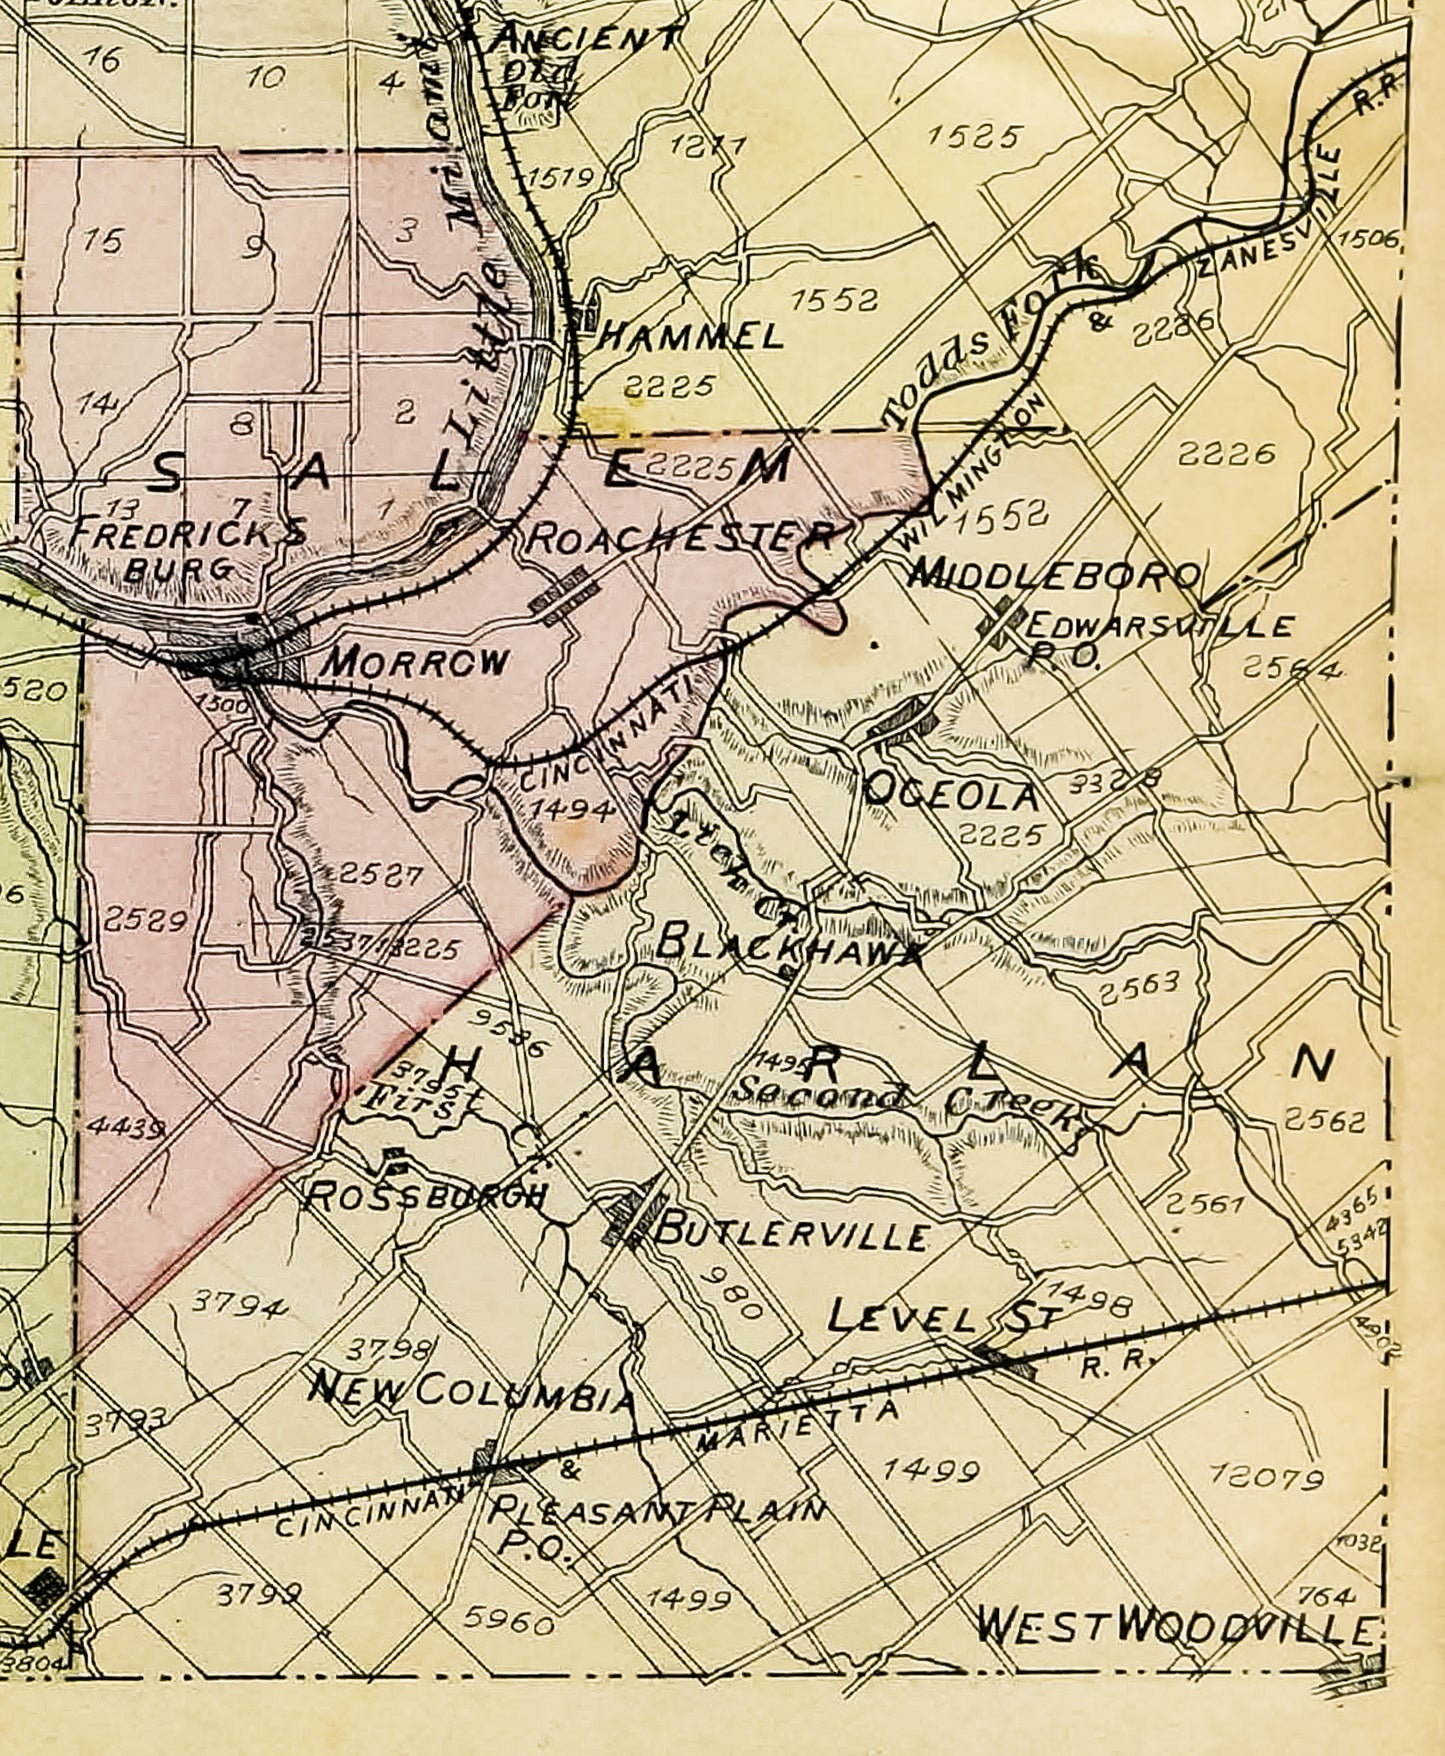 1882. Harlan Township, Warren County Map.